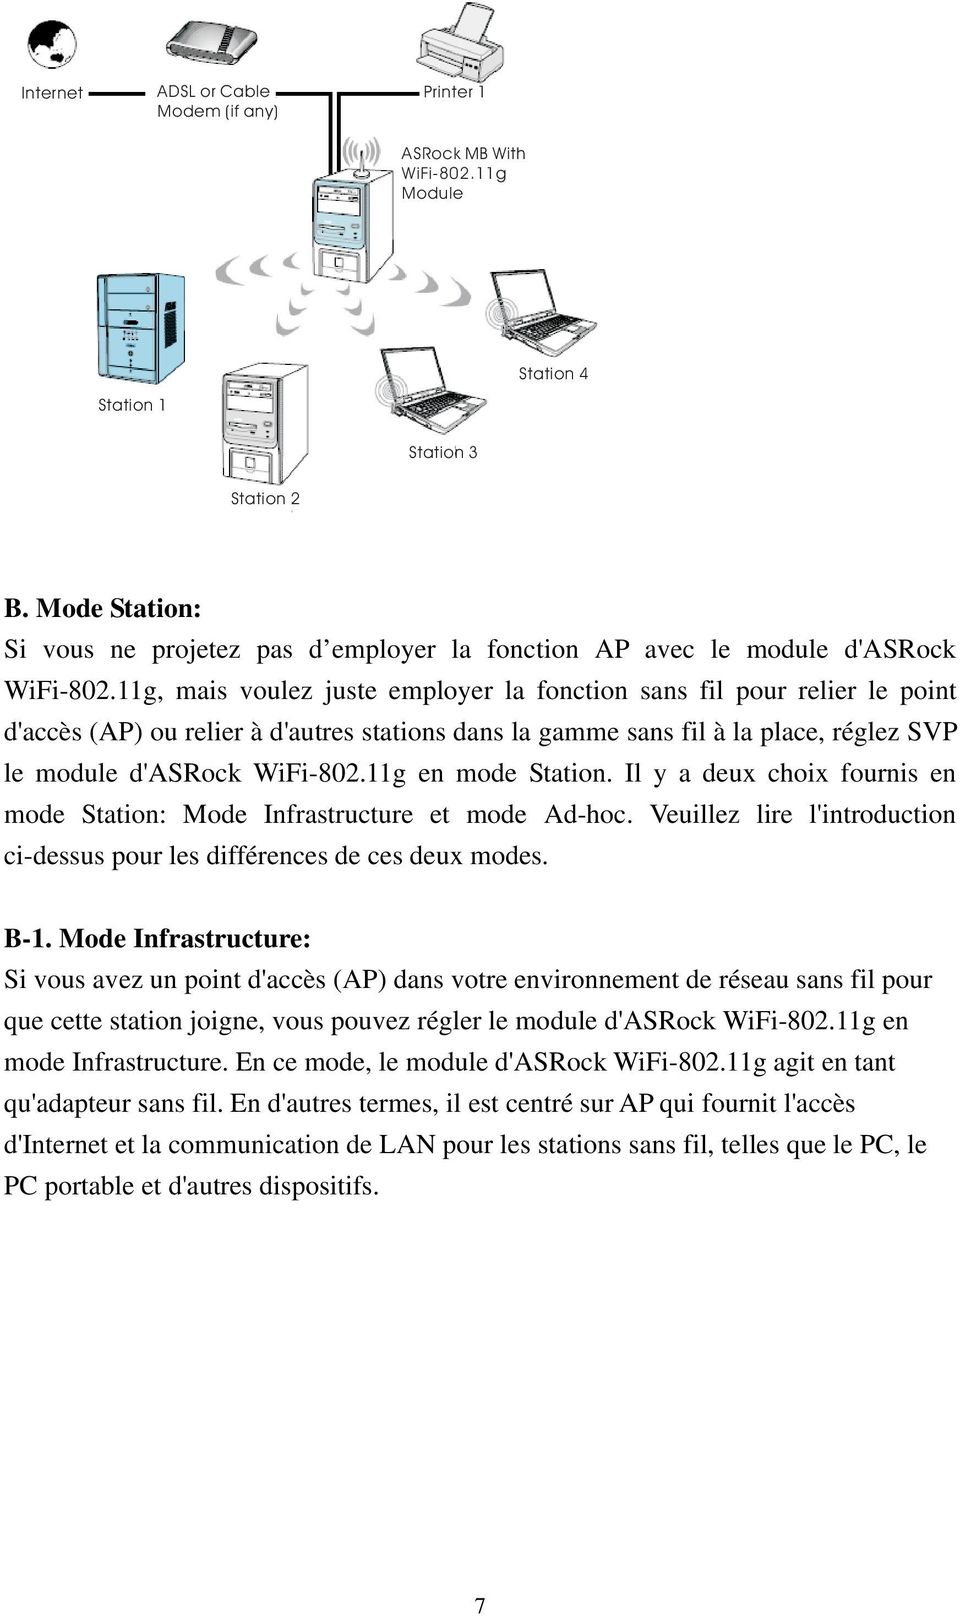 11g, mais voulez juste employer la fonction sans fil pour relier le point d'accès (AP) ou relier à d'autres stations dans la gamme sans fil à la place, réglez SVP le module d'asrock WiFi-802.